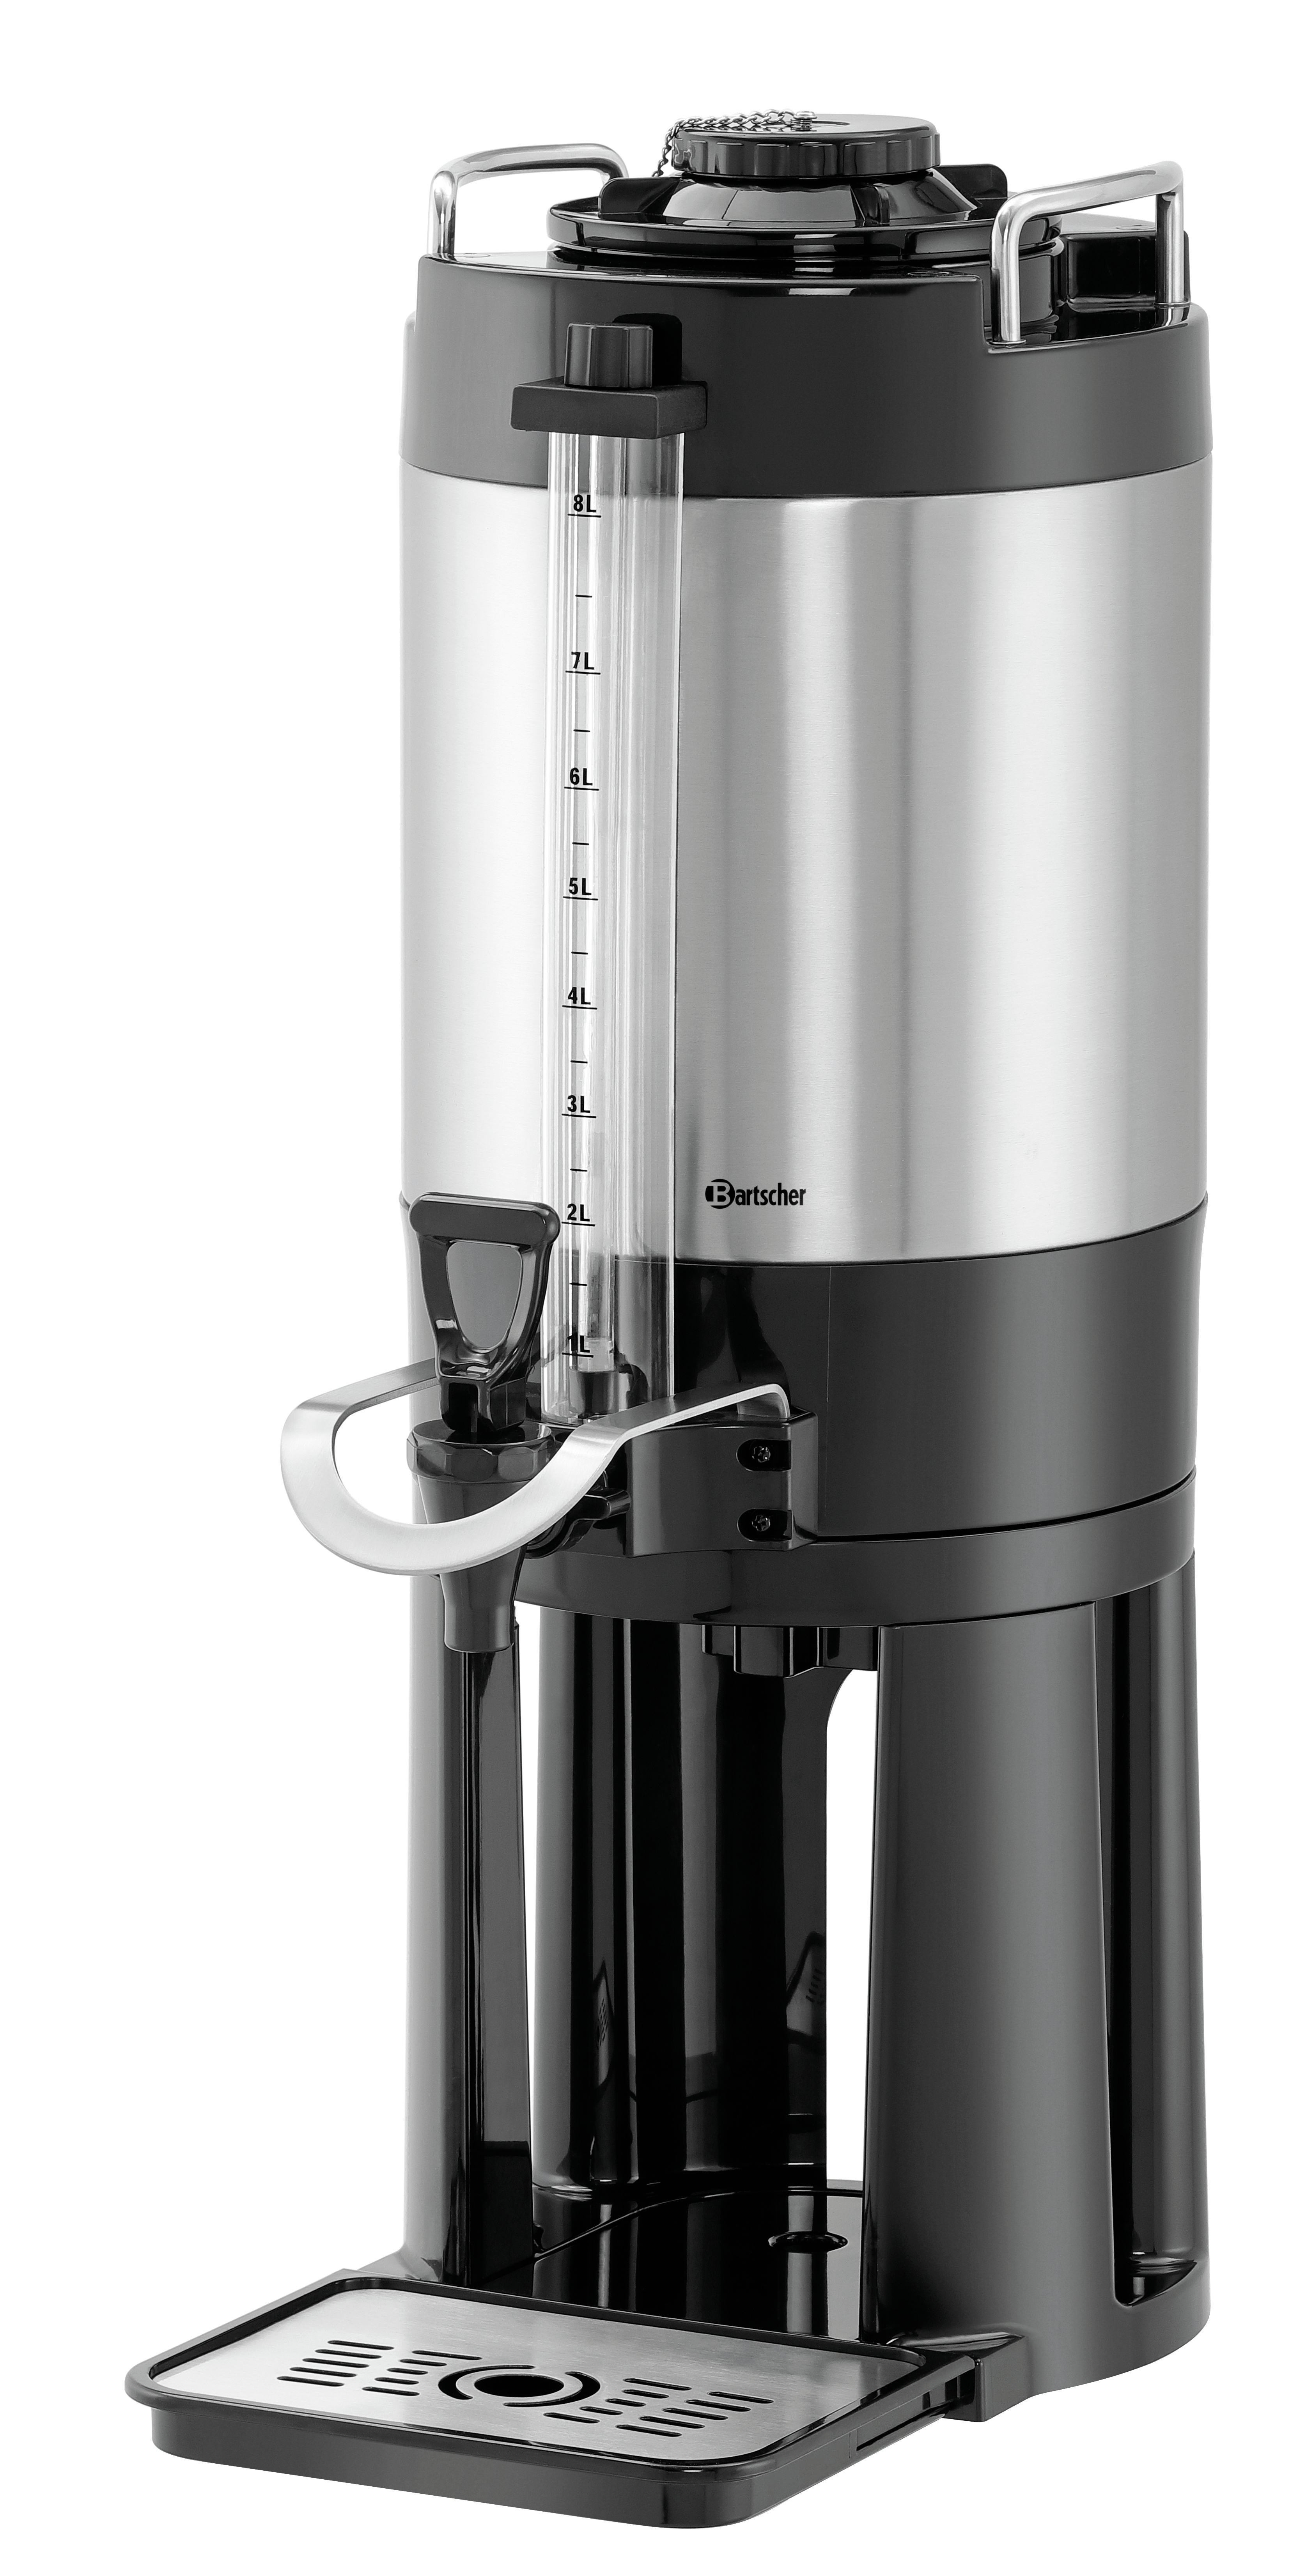 Bartscher Iso-Dispenser 8 Liter - 150990